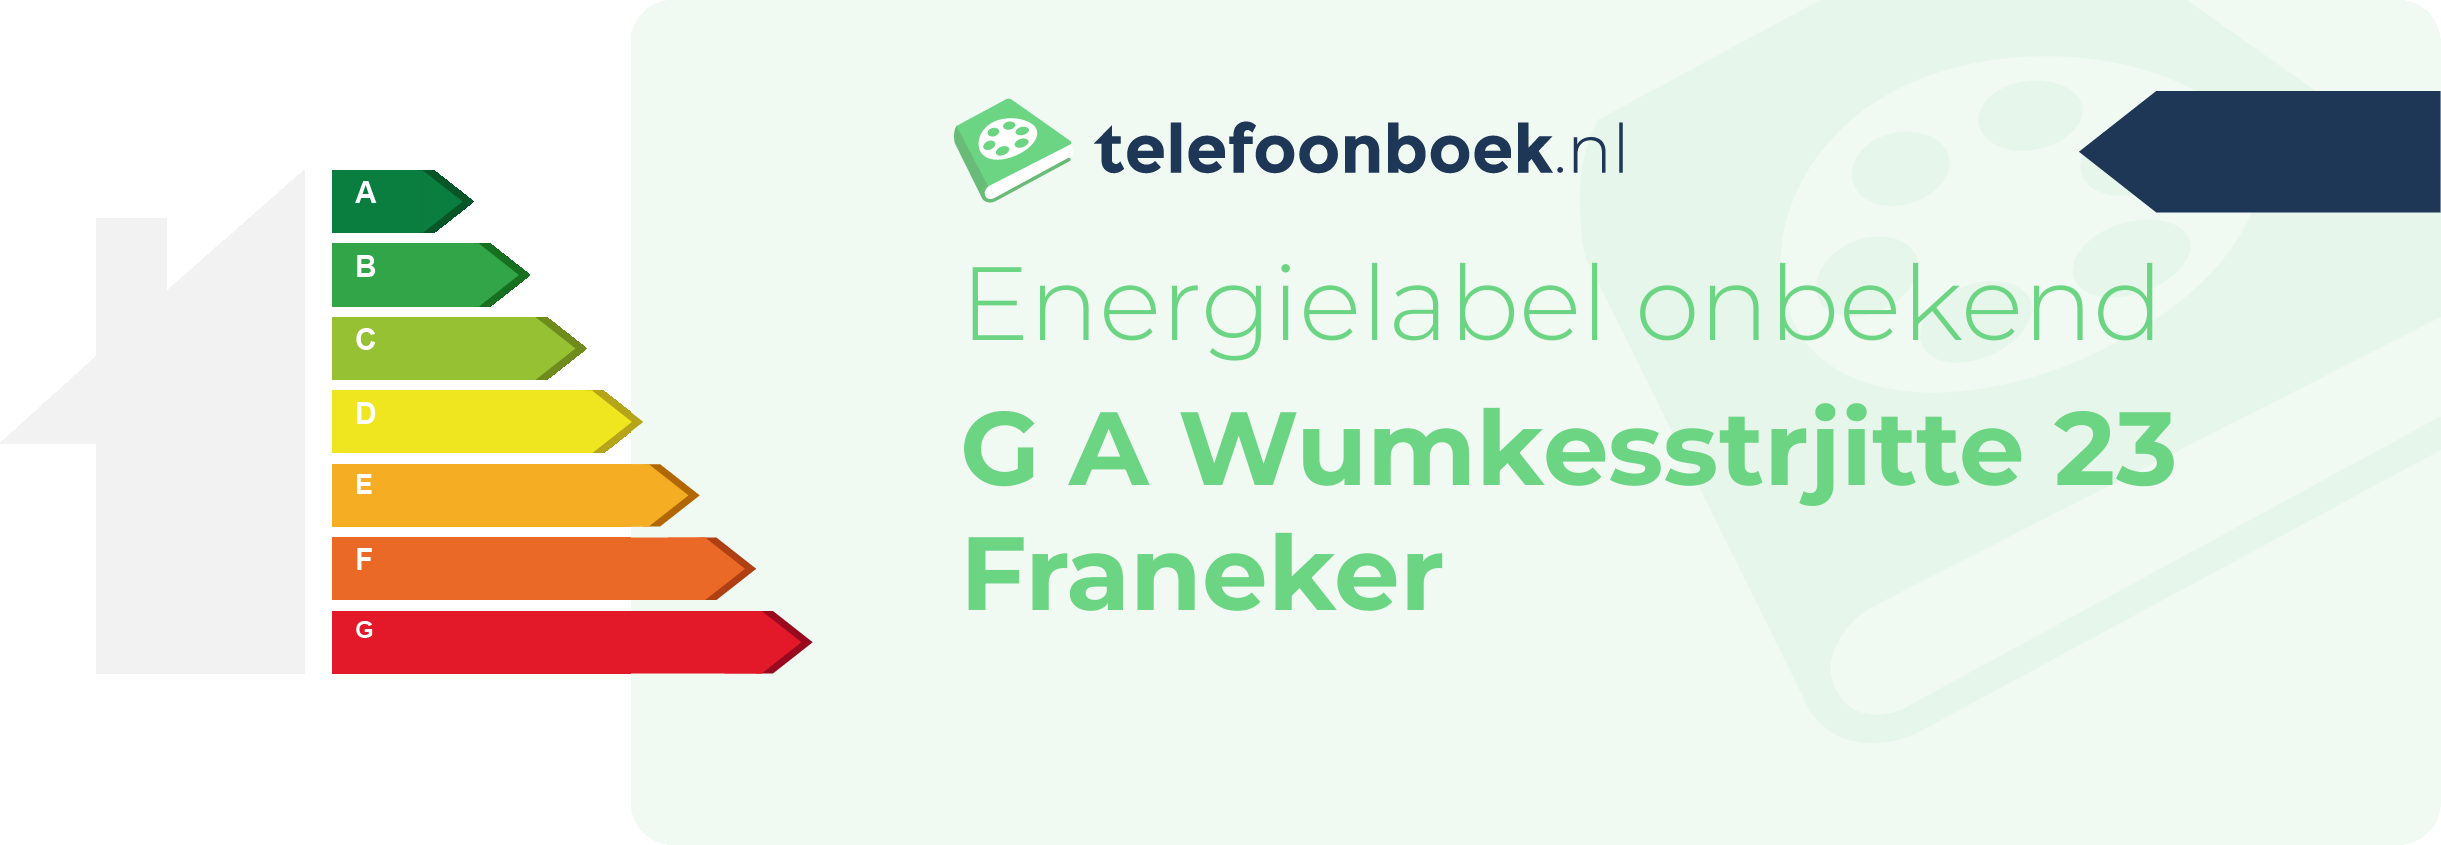 Energielabel G A Wumkesstrjitte 23 Franeker